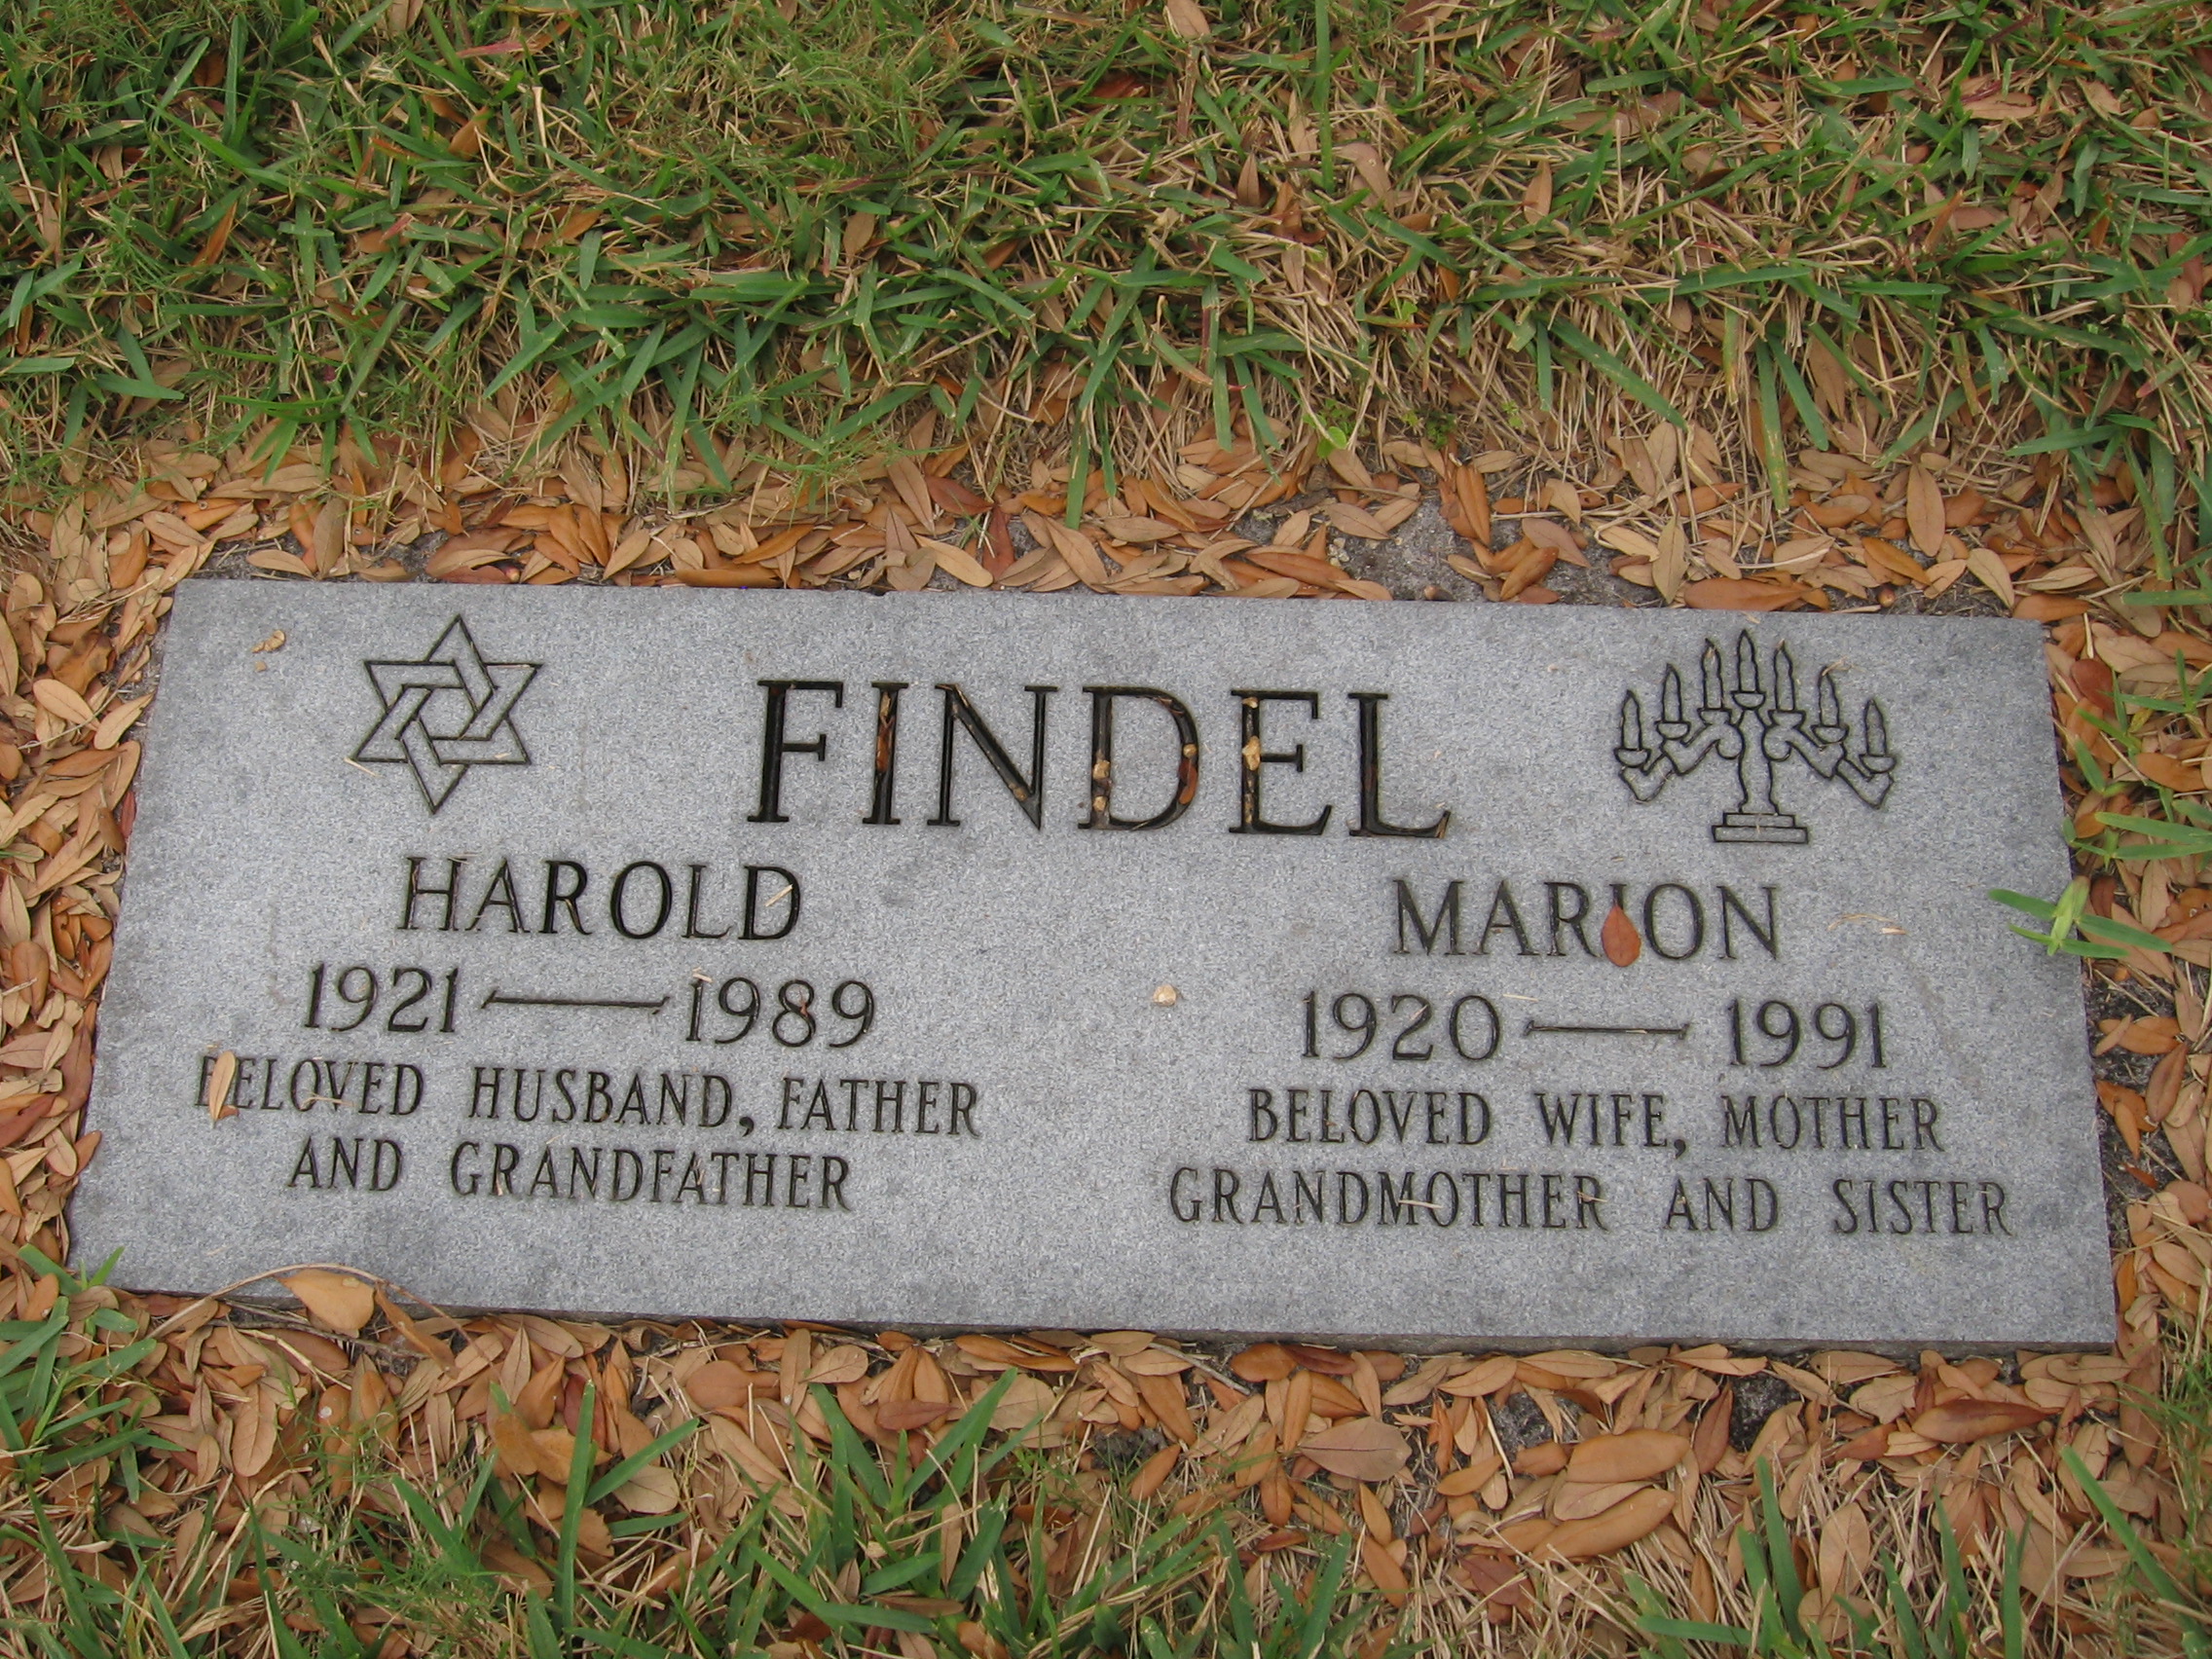 Harold Findel